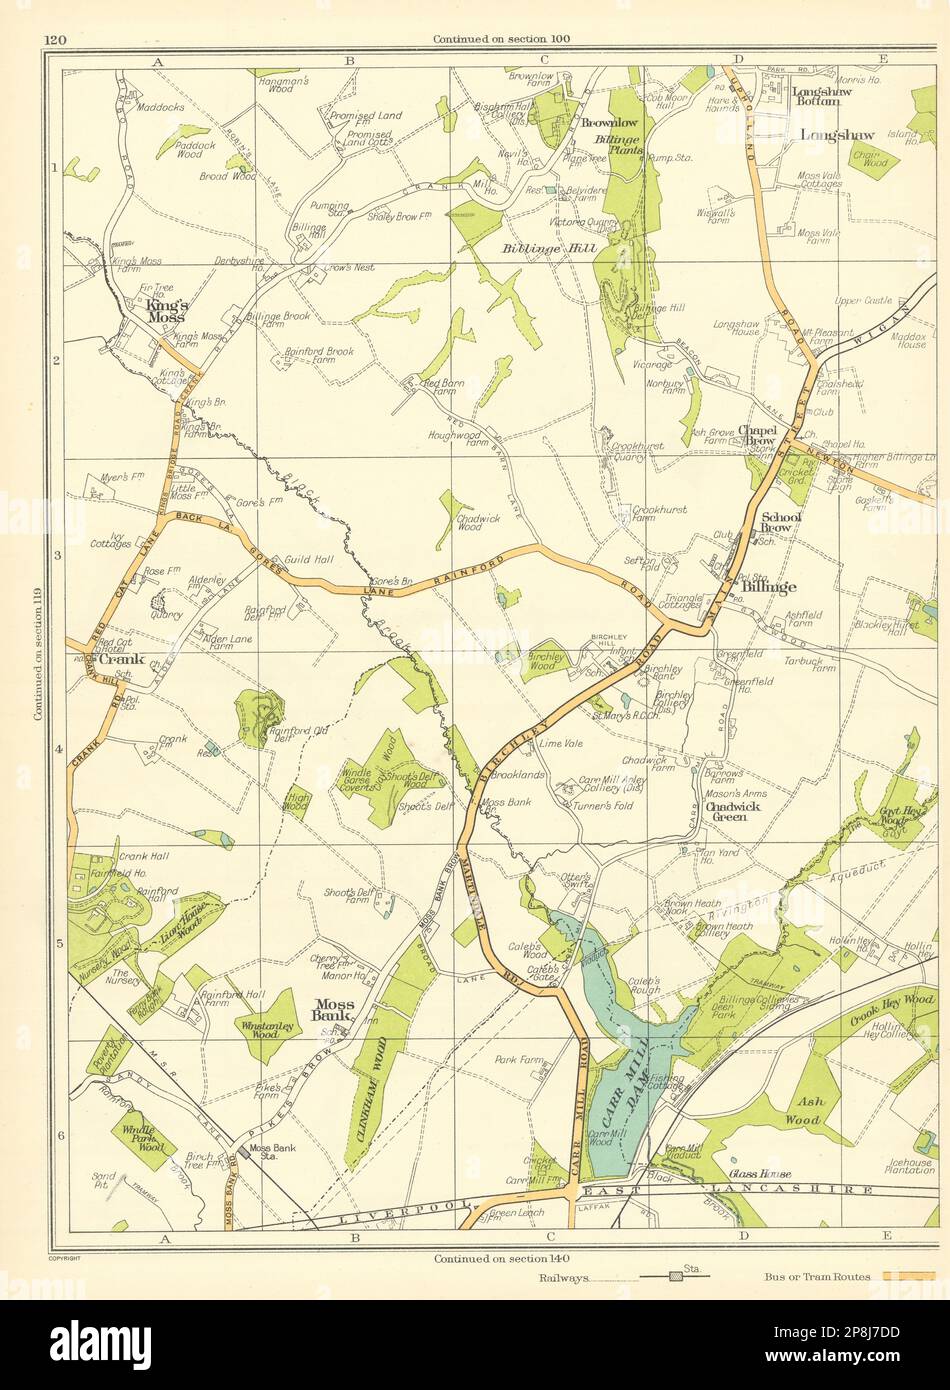 LANCASHIRE Moss Bank Billinge Chadwick Green Crank Longshaw King's Moss 1935 map Stock Photo